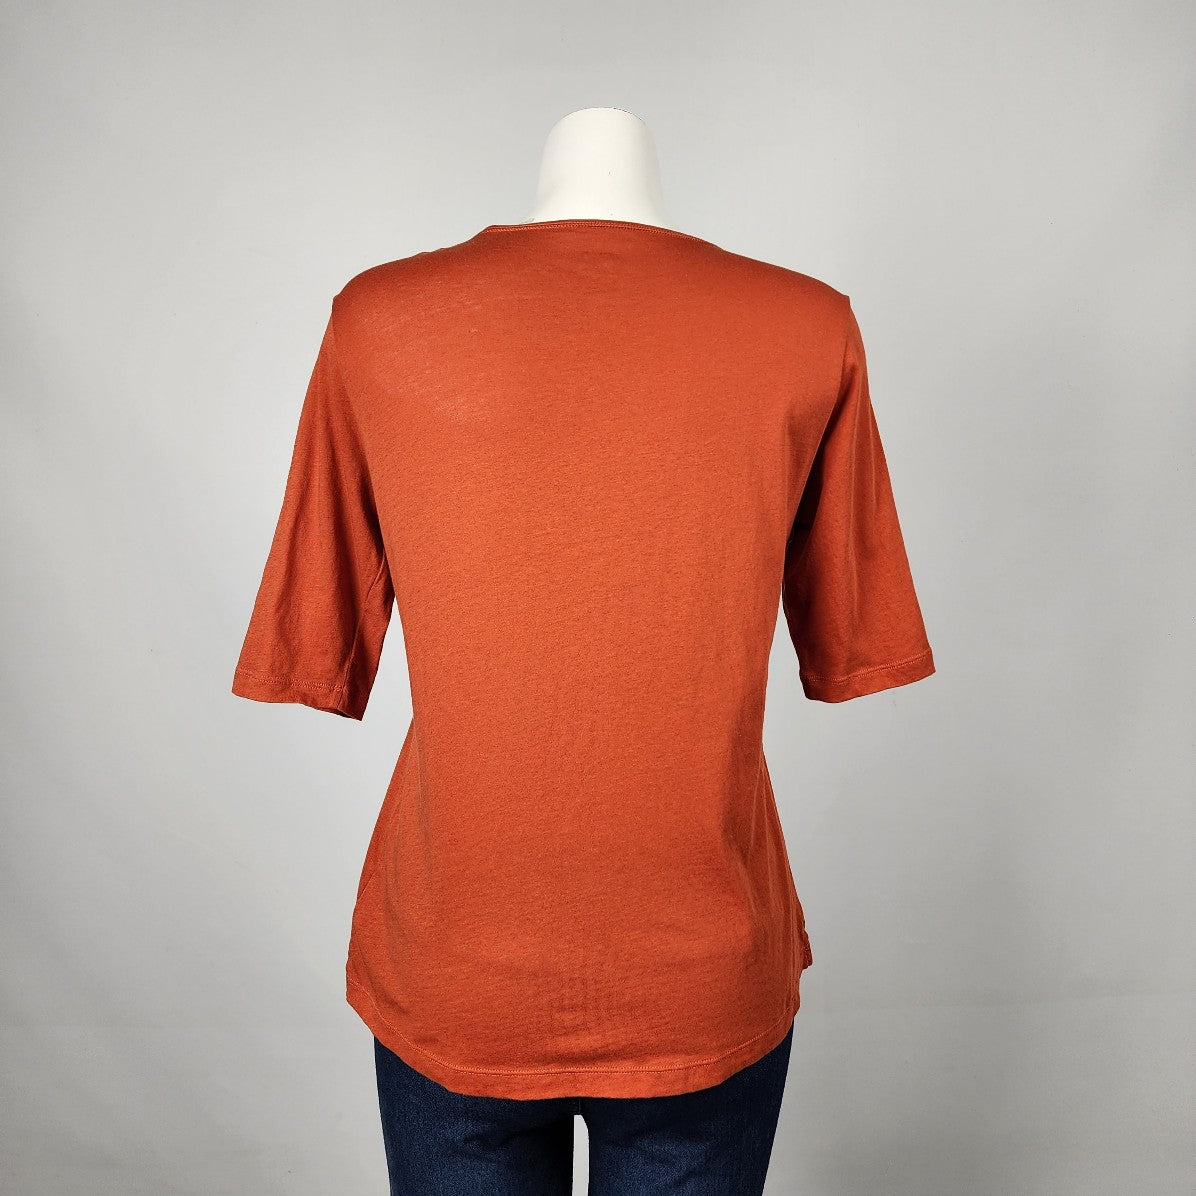 Eric Alexandre Orange Cotton Top Size M/L